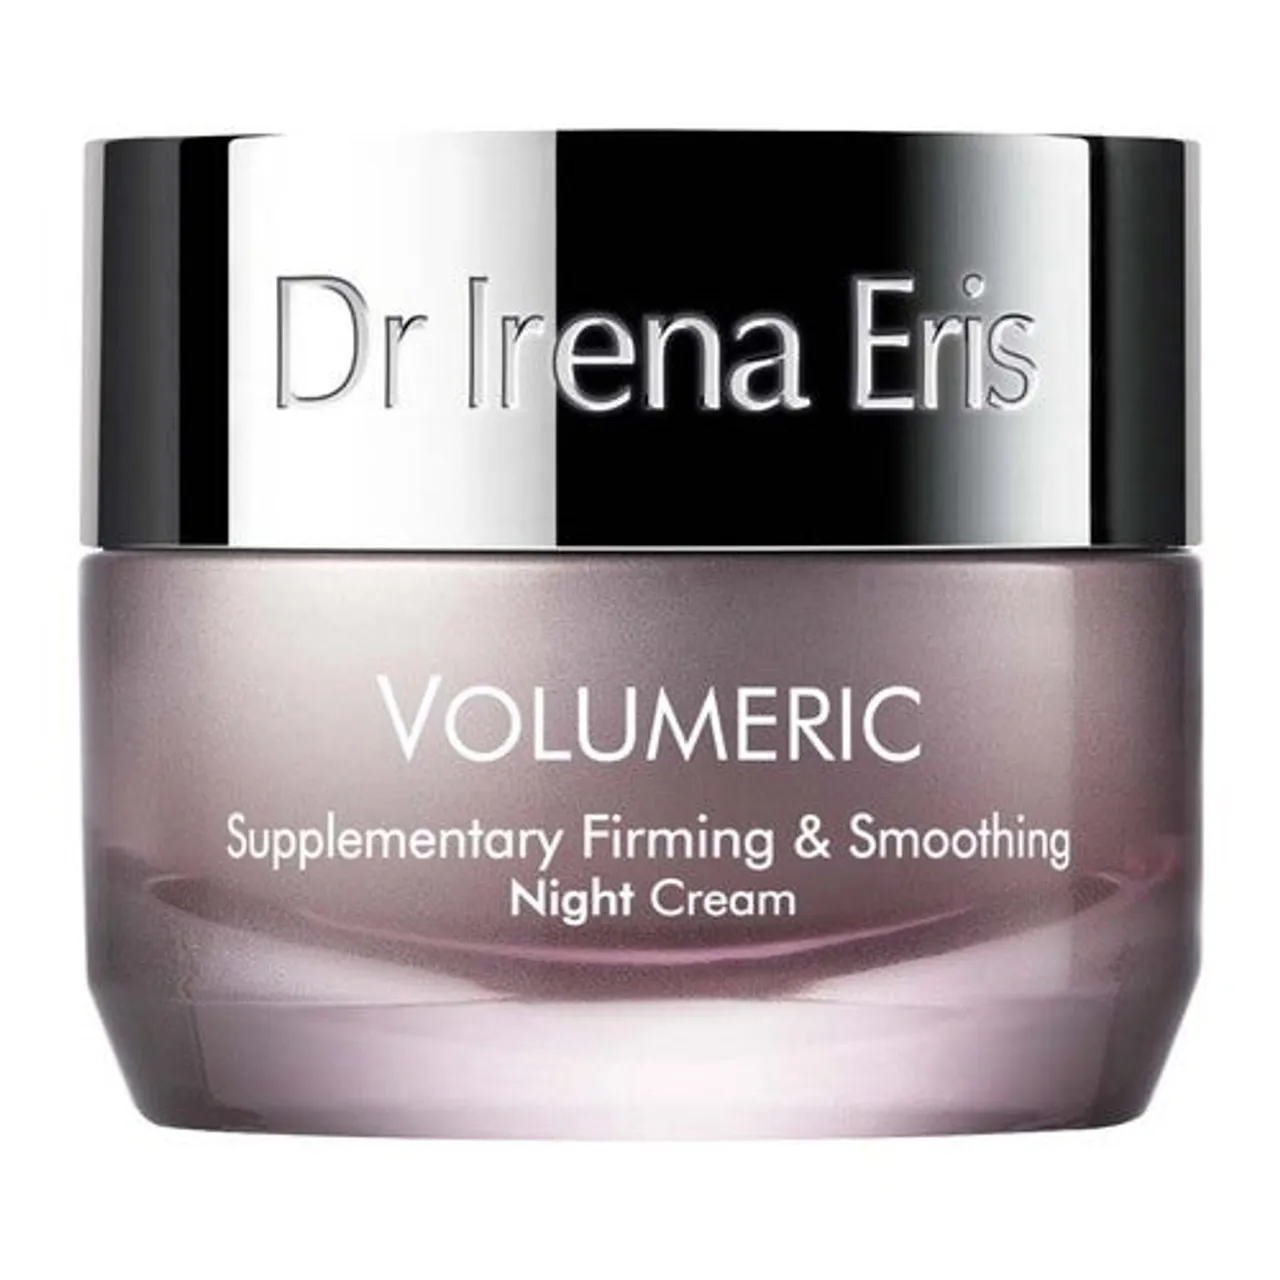 Dr Irena Eris Volumeric Night Cream 50 ml